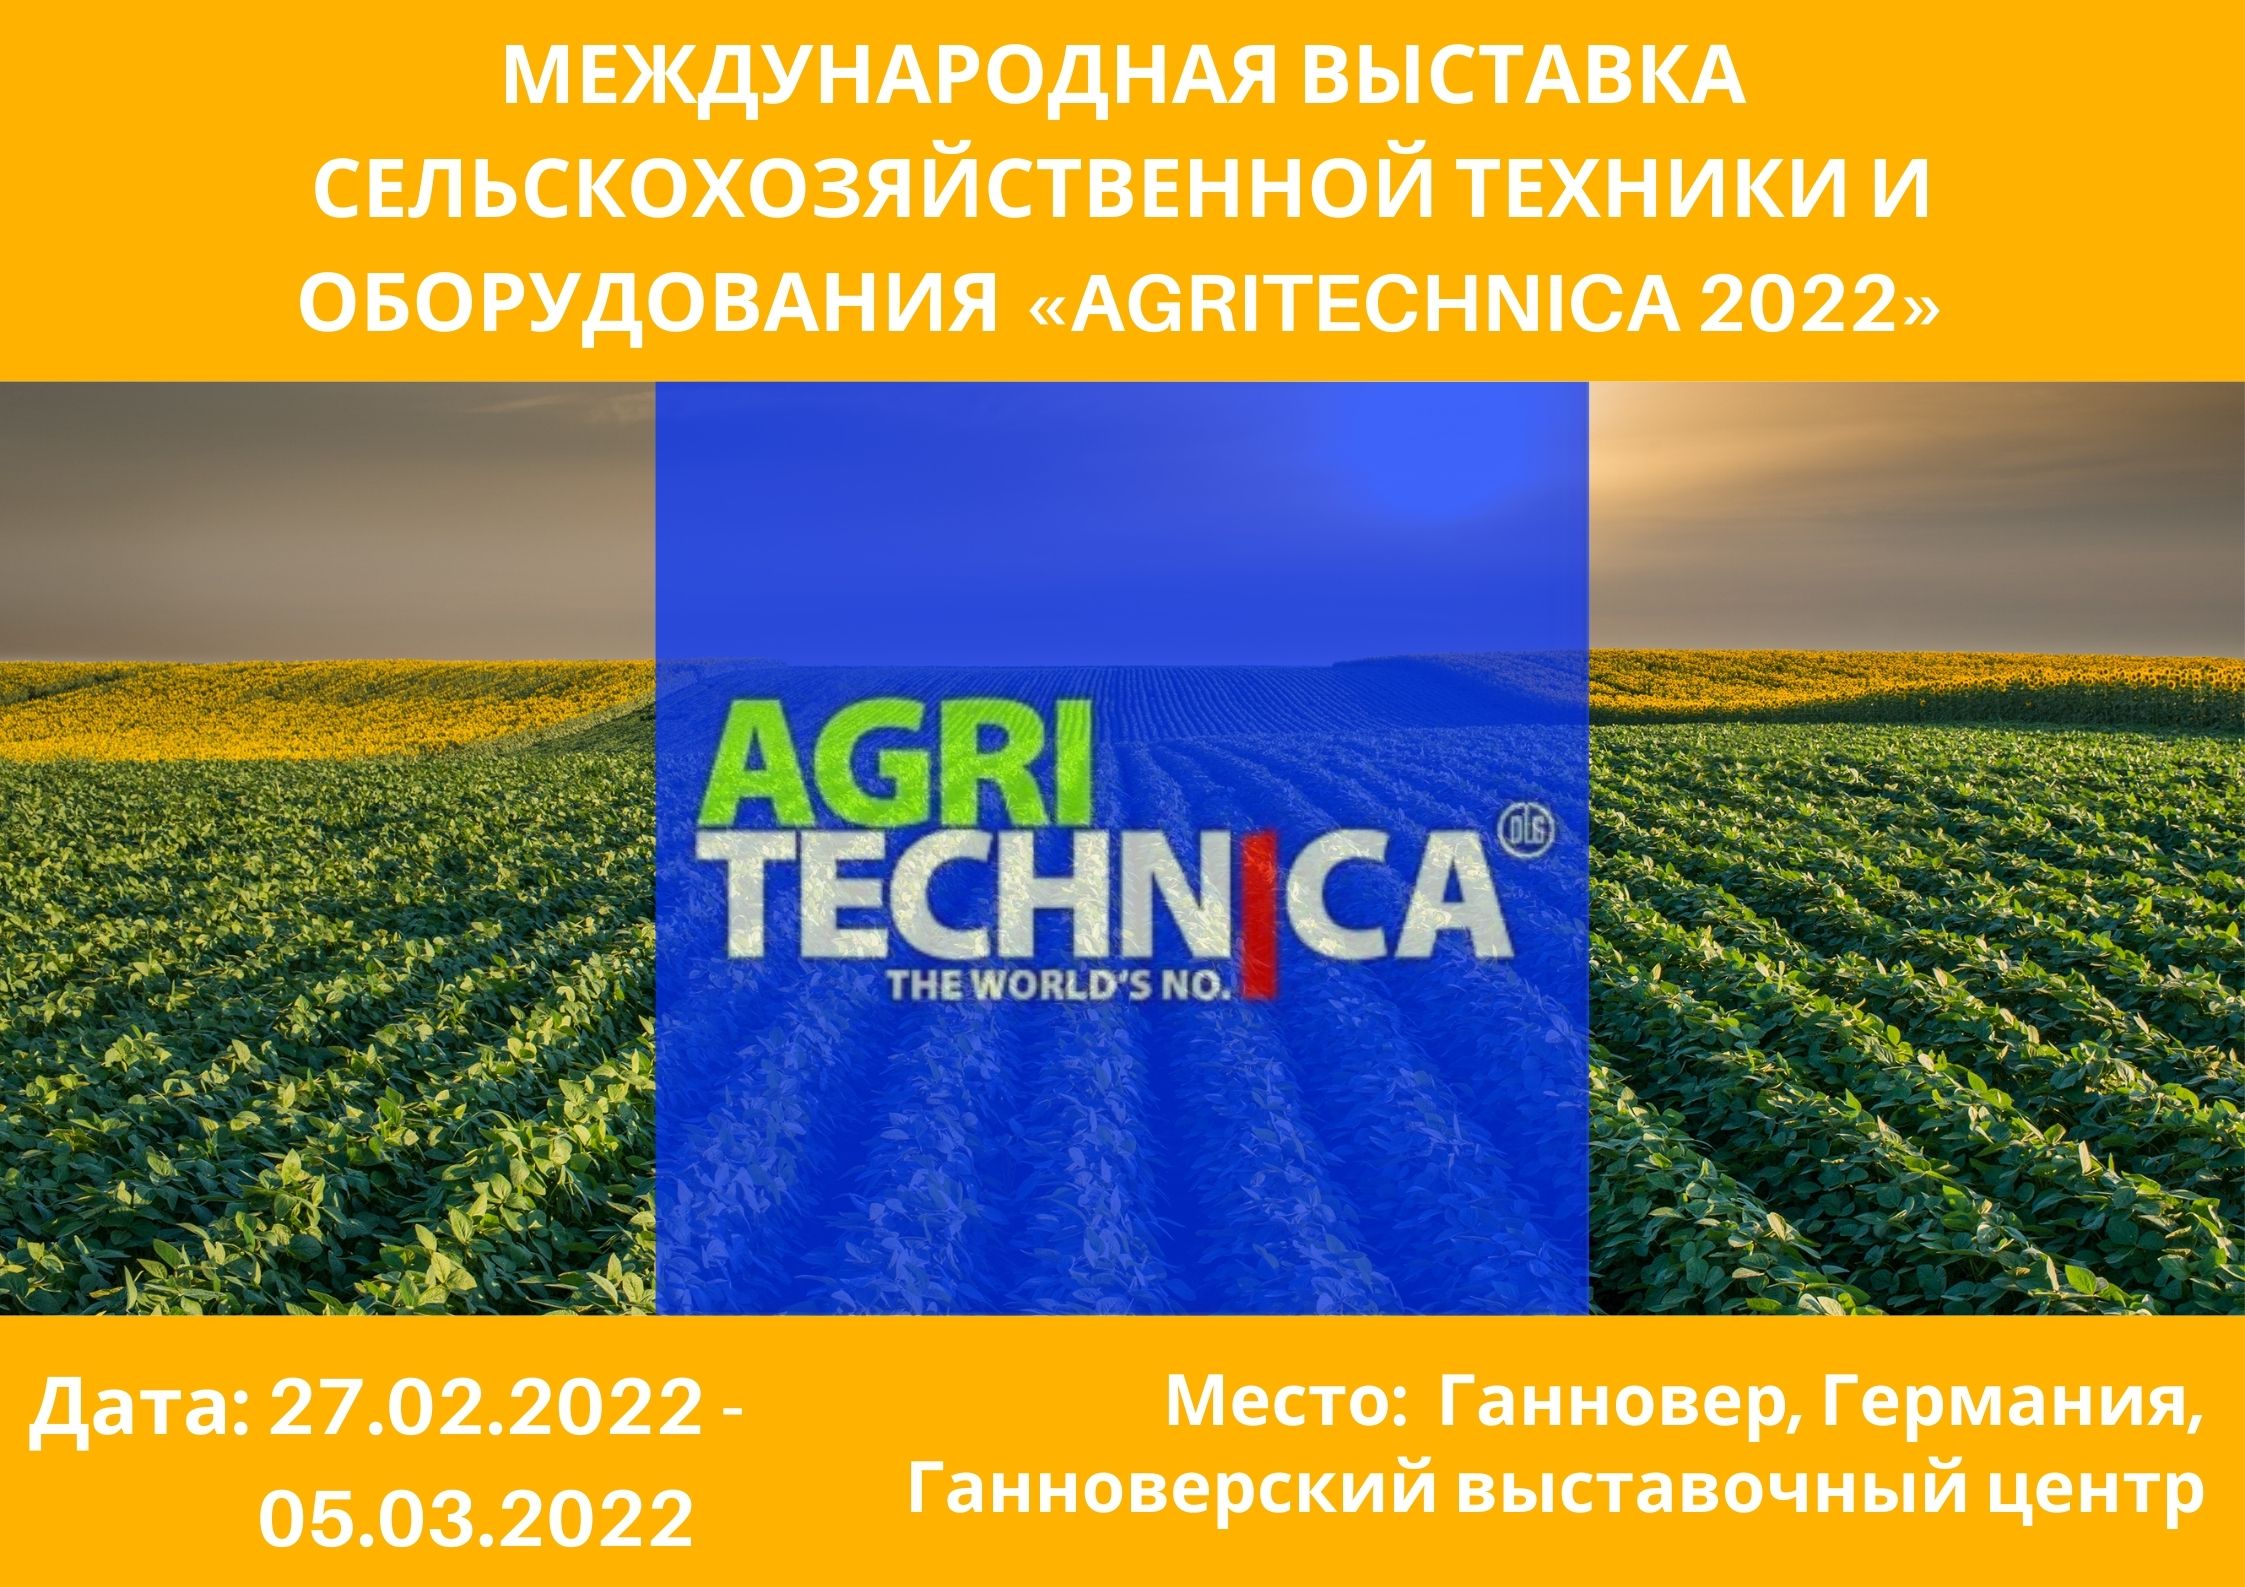 «Agritechnica 2022» АУЫЛ ШАРУАШЫЛЫҒЫ ТЕХНИКАСЫ МЕН ЖАБДЫҚТАРЫНЫҢ ХАЛЫҚАРАЛЫҚ КӨРМЕСІ